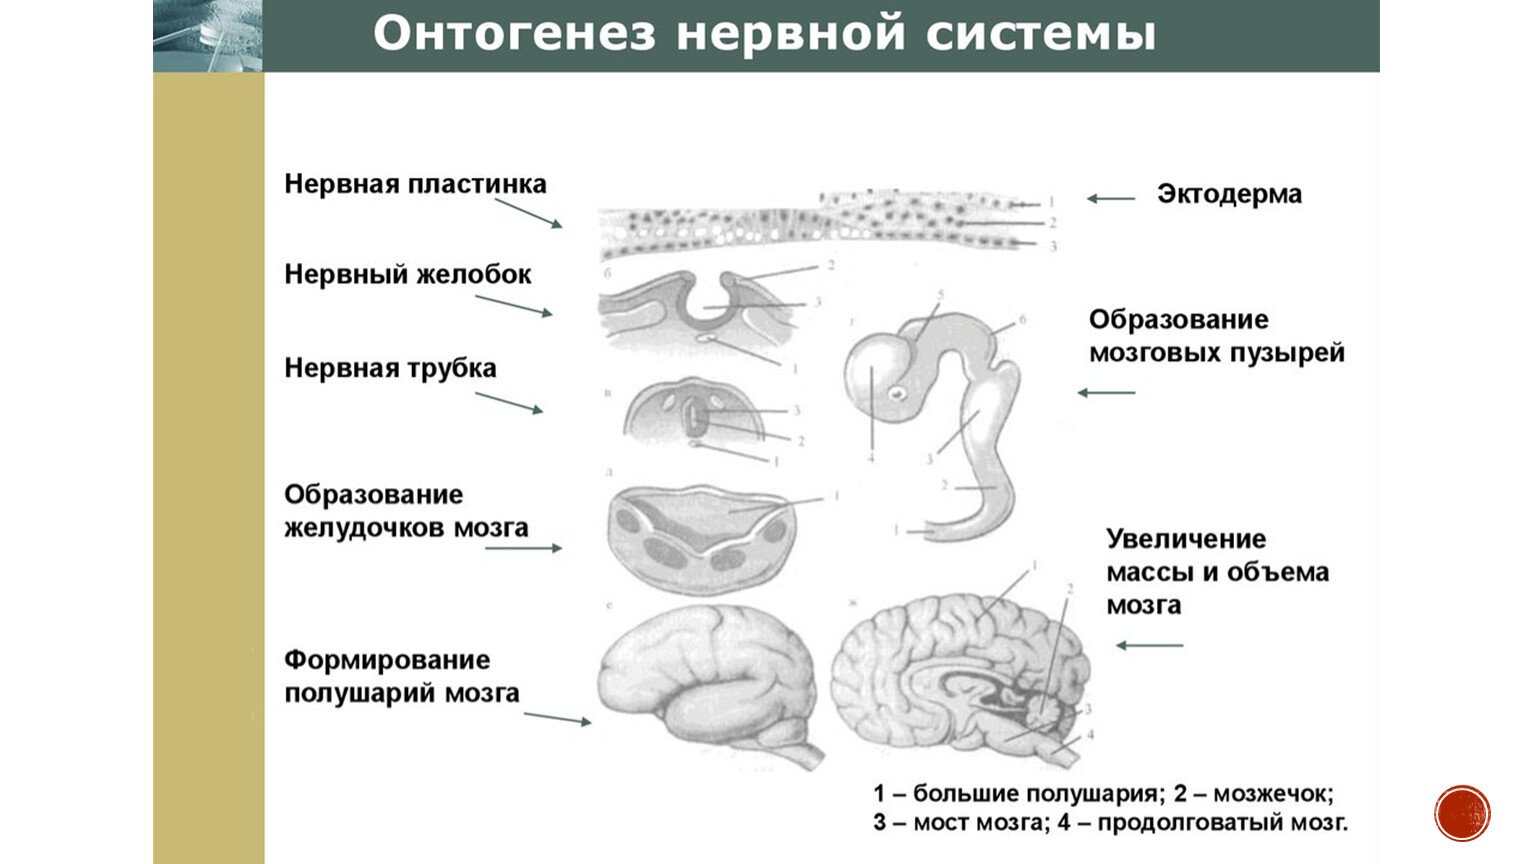 Основные этапы онтогенеза центральной нервной системы человека